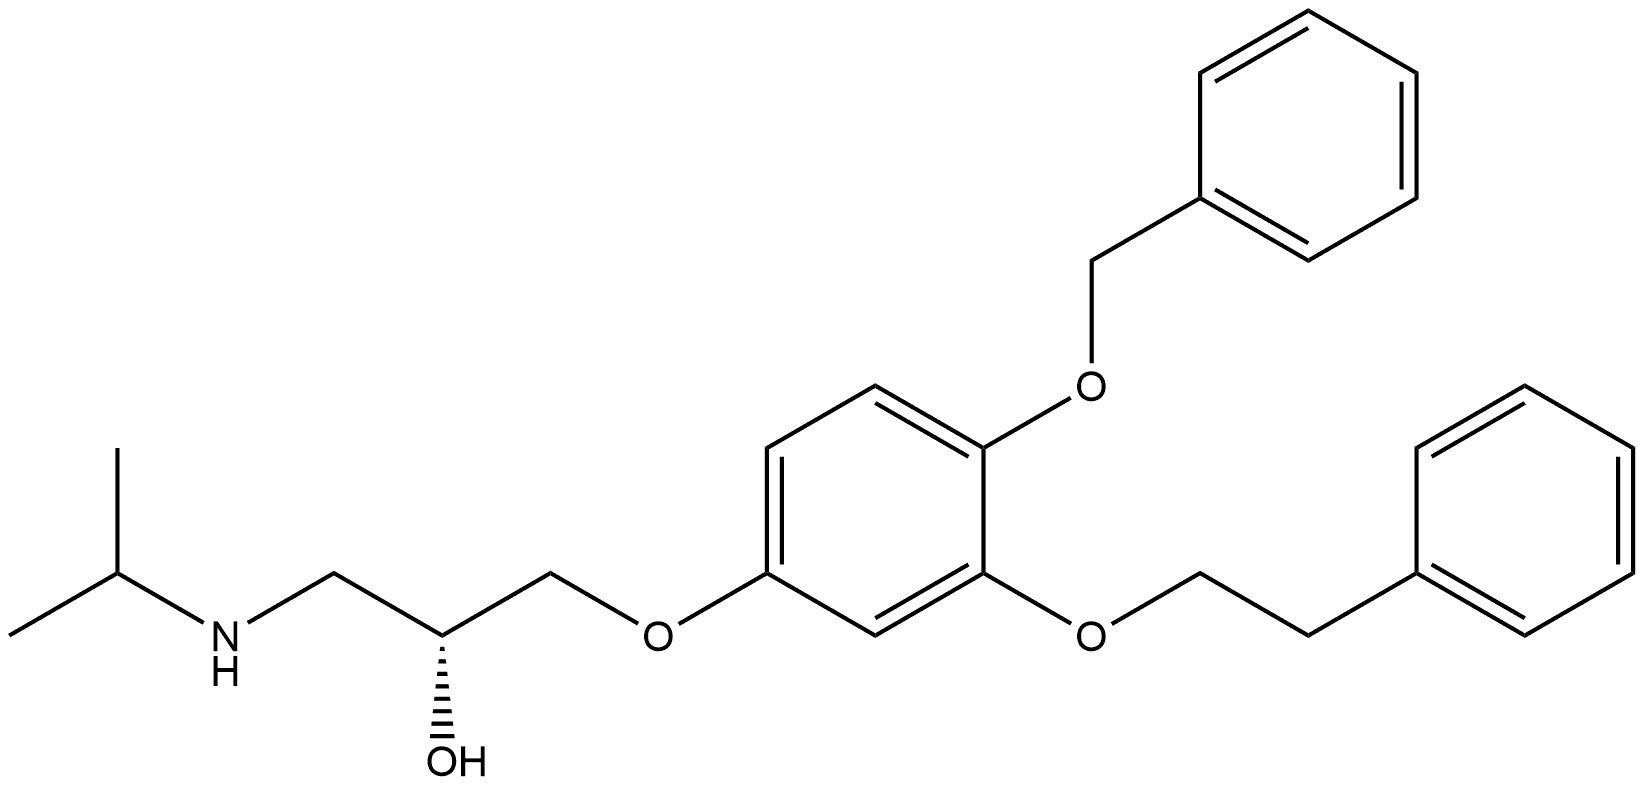 p62-ZZ ligand YOK-1304 化学構造式